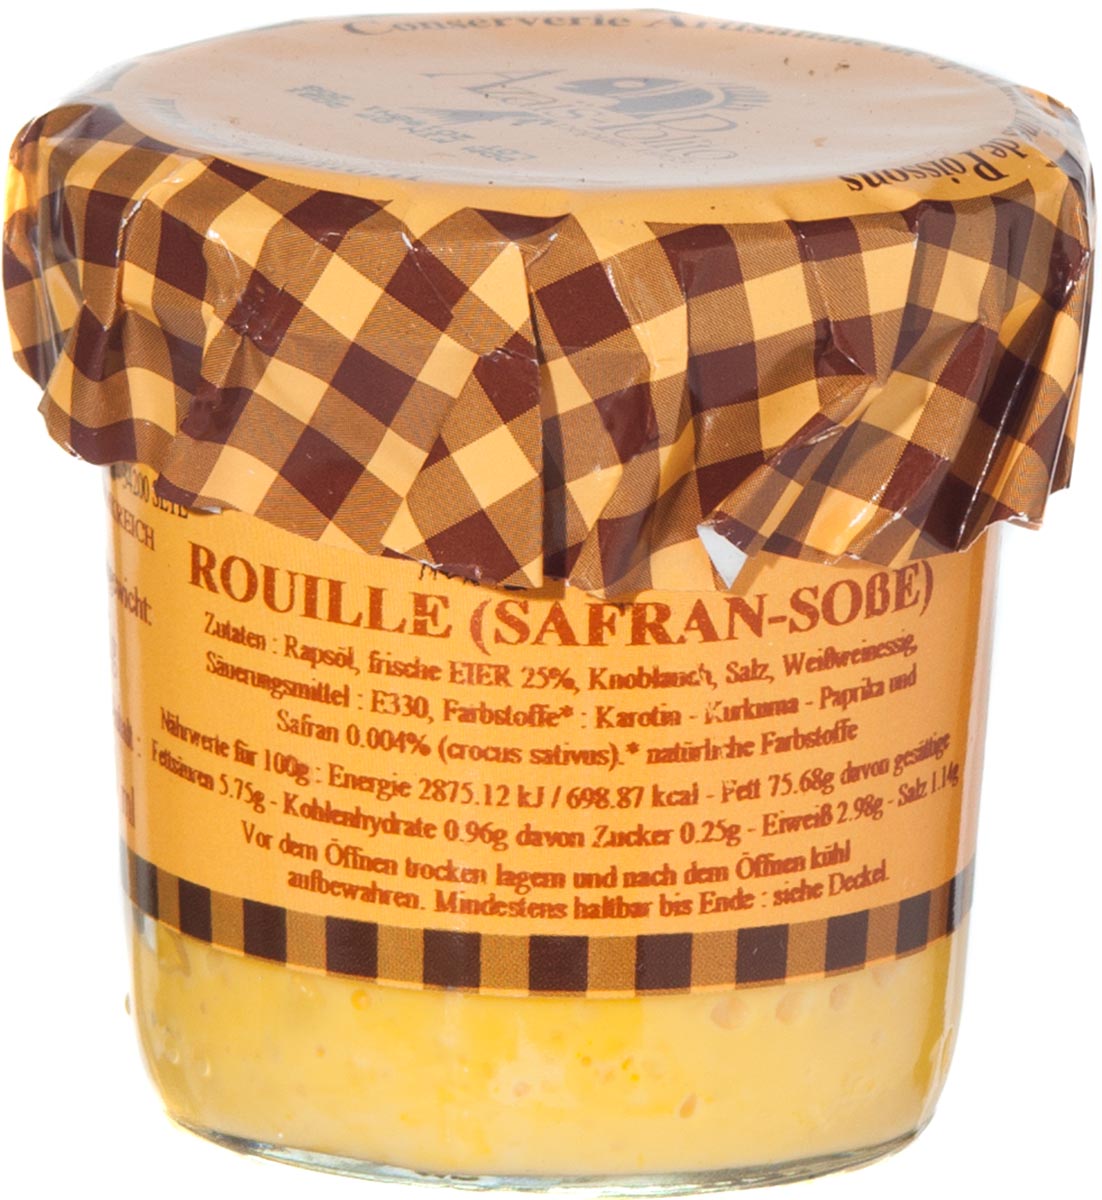 Rouille Sauce (Safranmayonnaise), 85g